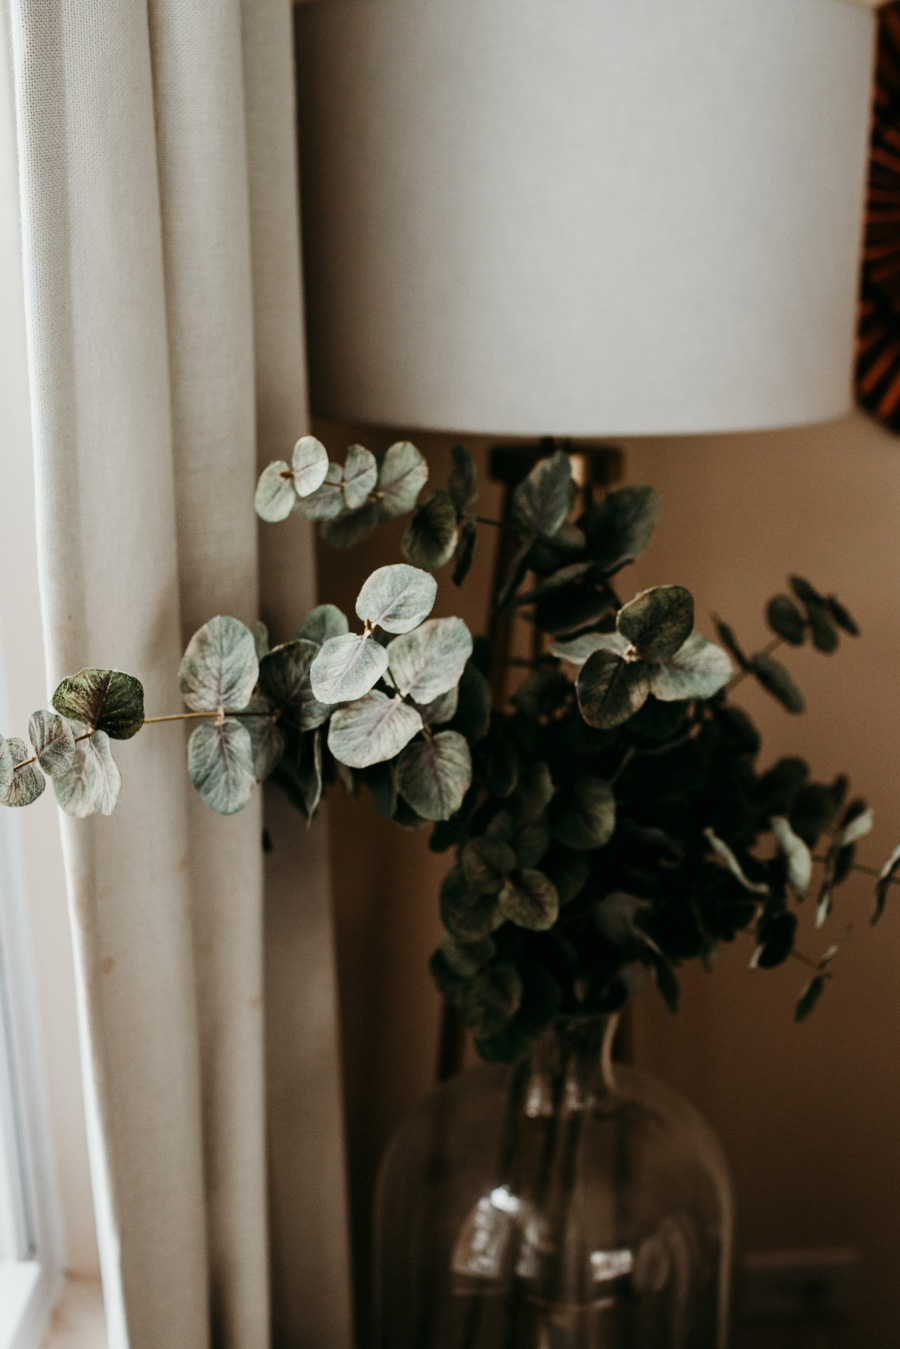 Eucalyptus in a vase by a window